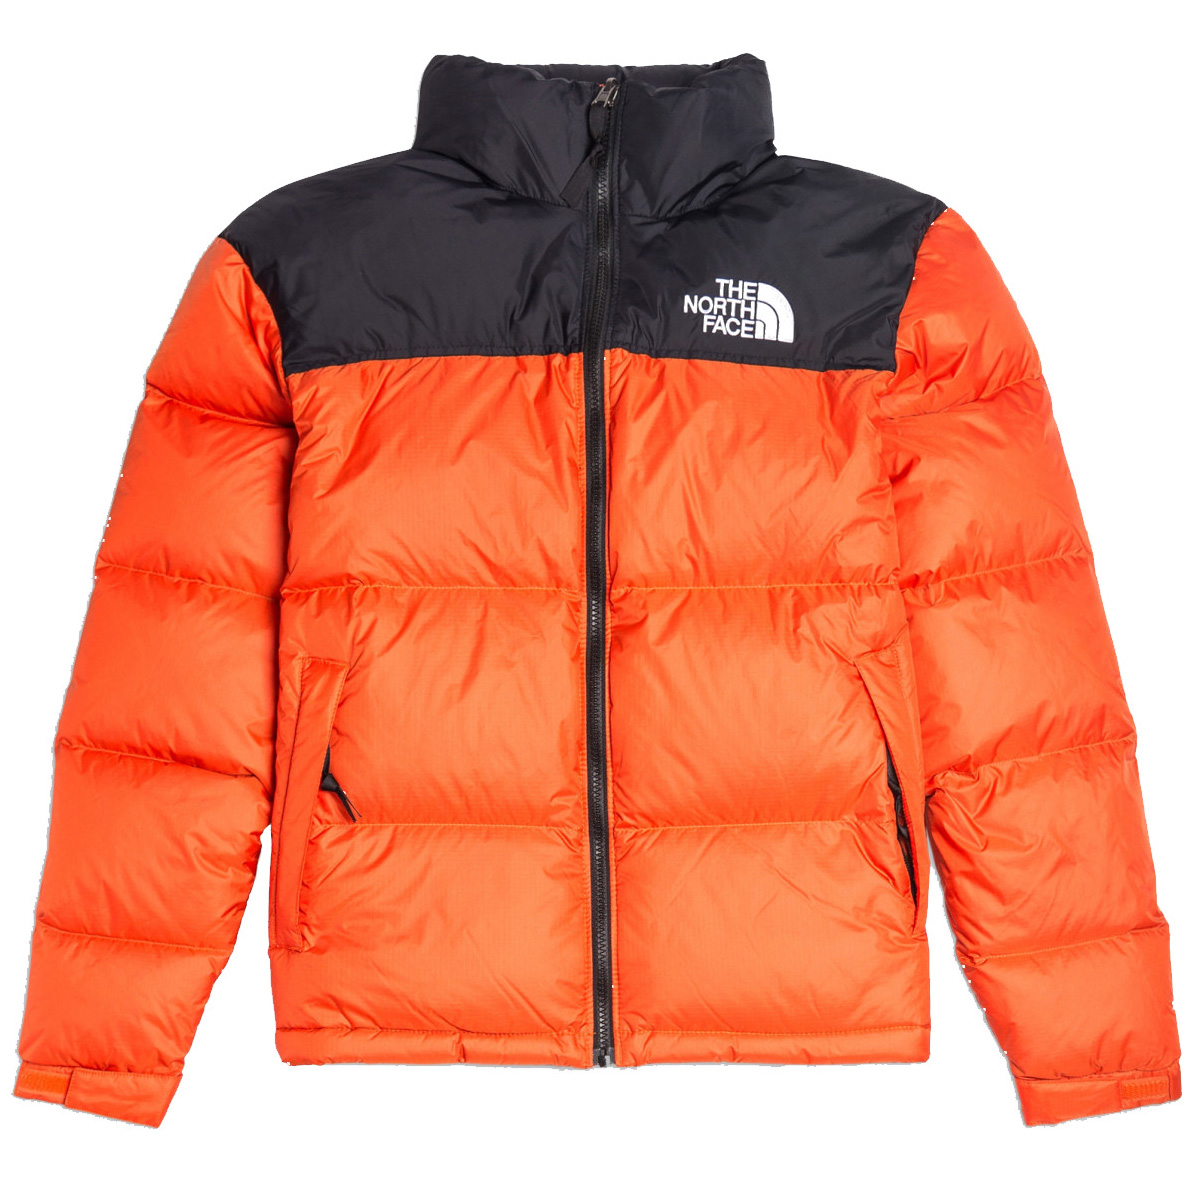 1996 retro nuptse jacket persian orange